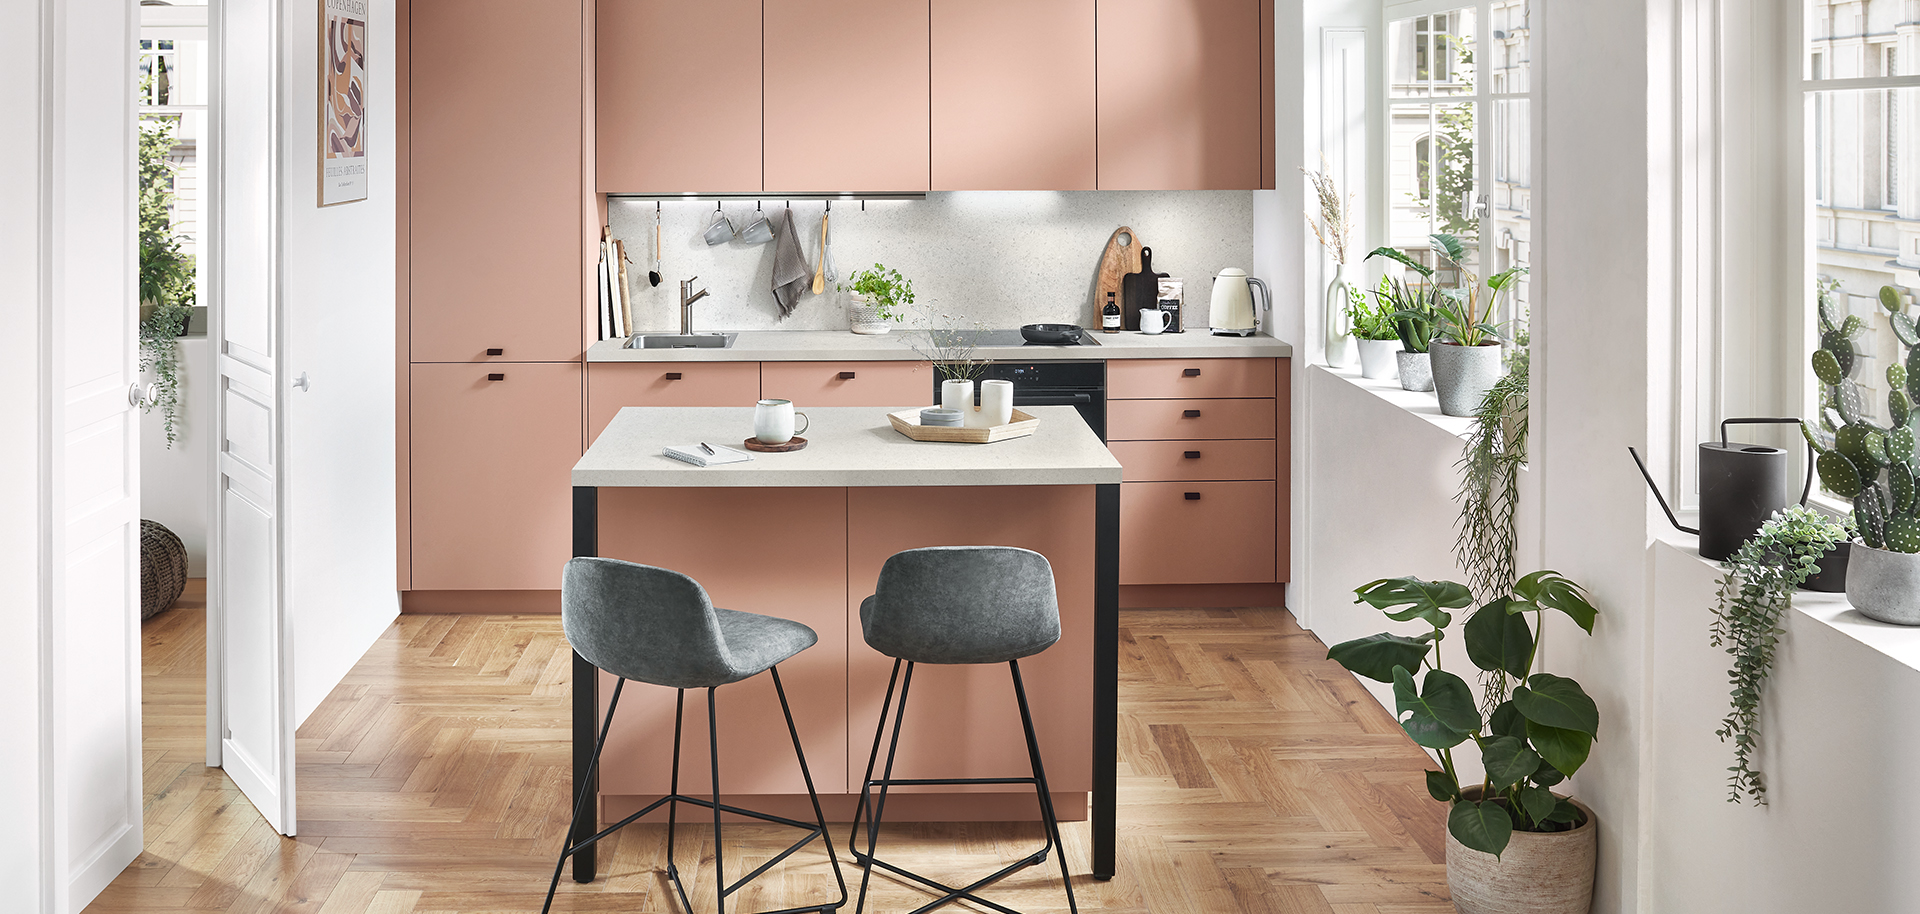 Een moderne, luchtige keuken met strakke witte kasten, roestvrijstalen apparaten en een gezellig eetgedeelte met stijlvolle grijze stoelen en weelderige groene planten.